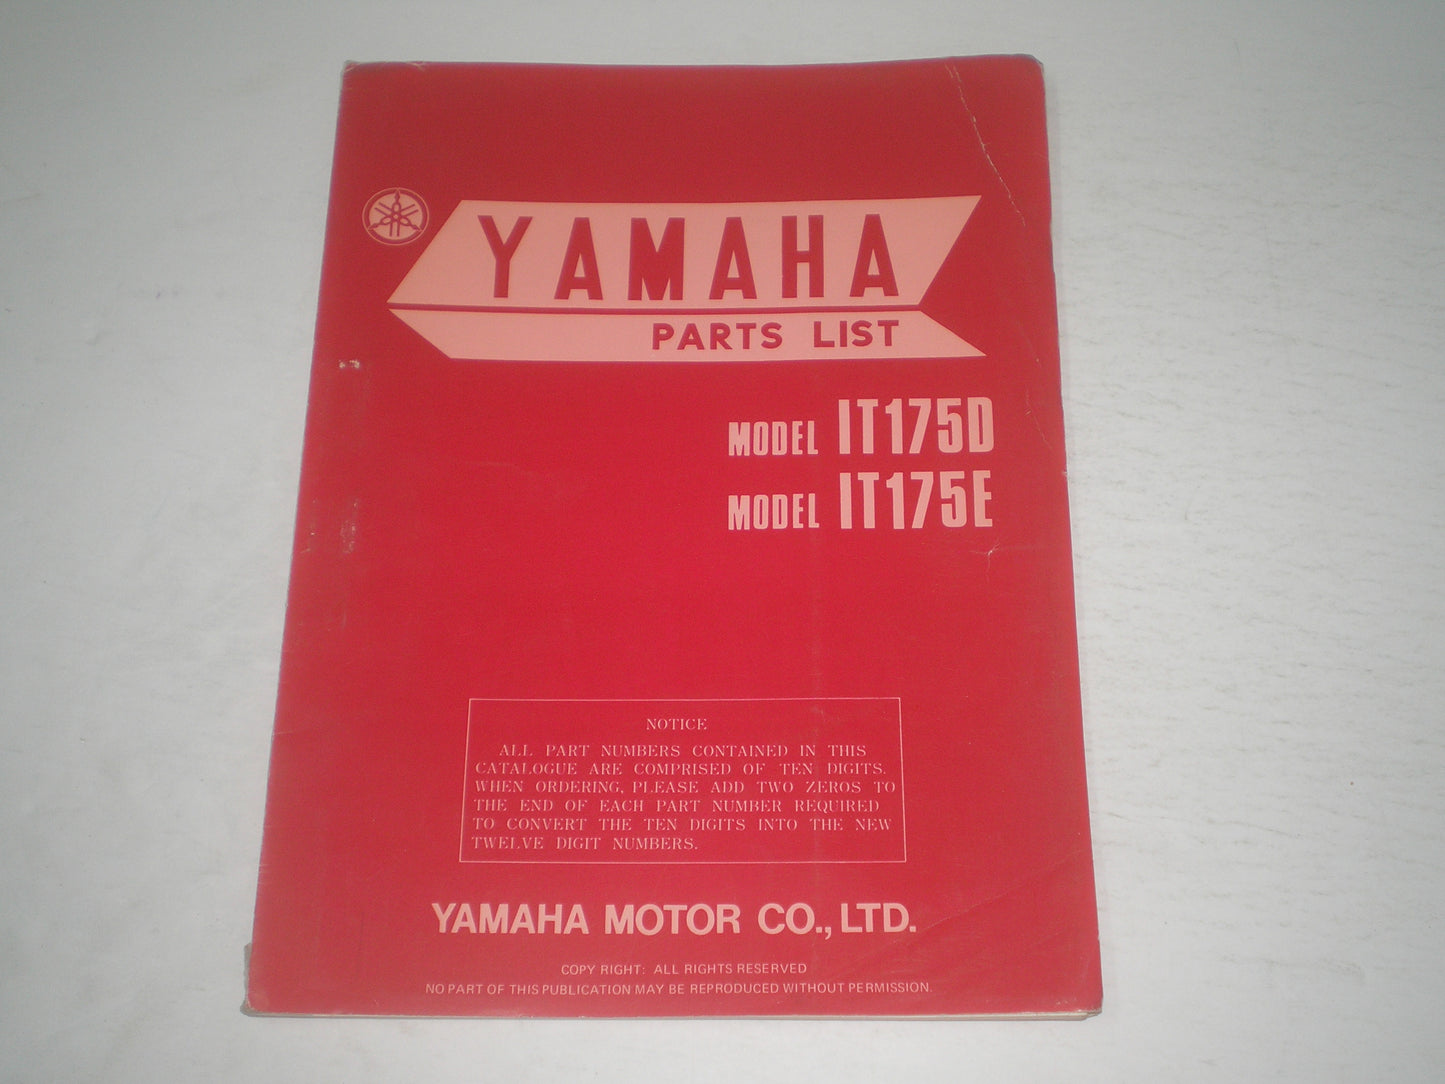 YAMAHA IT175 D/E  1978  Parts List / Catalogue  1W2-28198-61  LIT-10011-W2-01  #1707